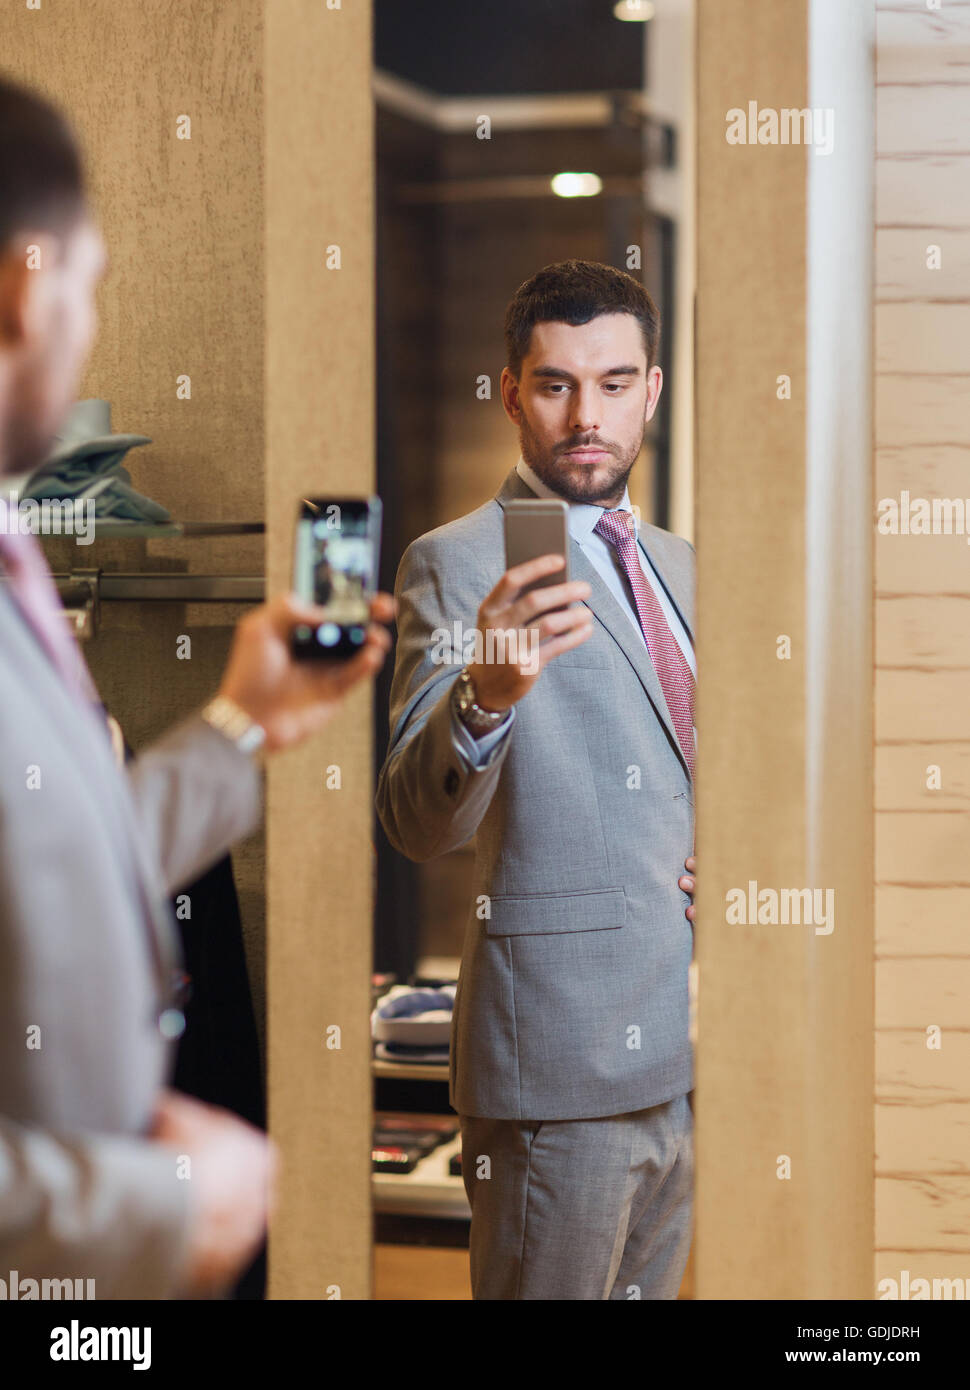 Mann im Anzug unter Spiegel Selfie auf Bekleidungsgeschäft Stockfotografie  - Alamy